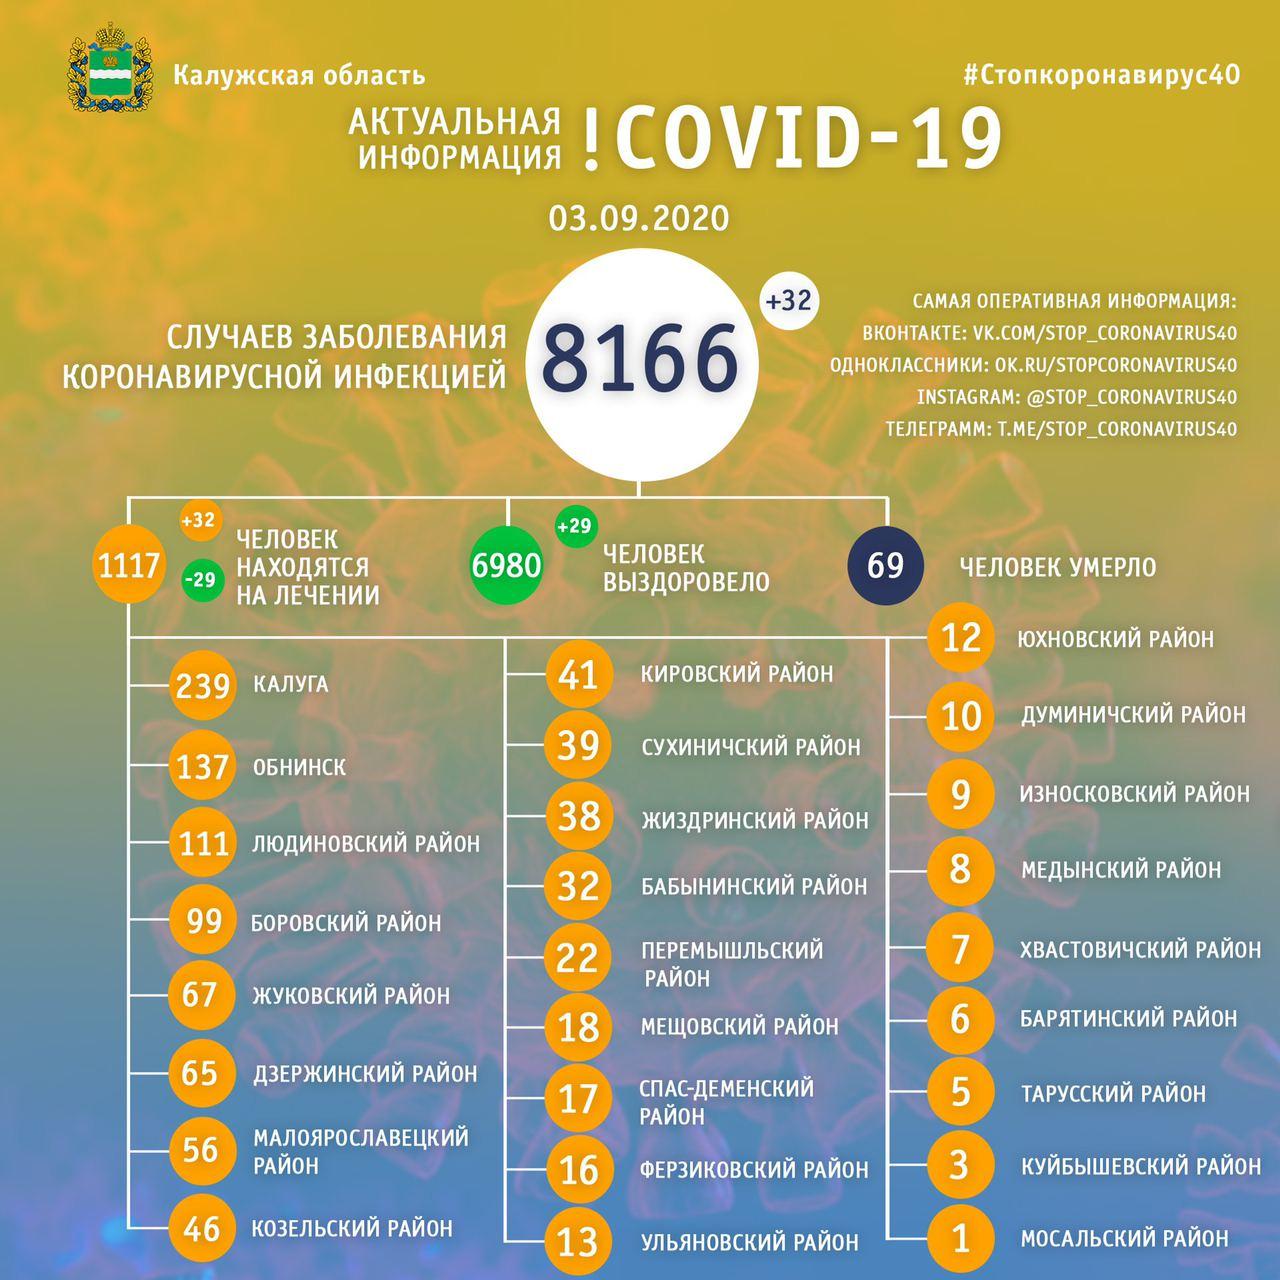 Официальная статистика по коронавирусу в Калужской области на 3 сентября 2020 года.